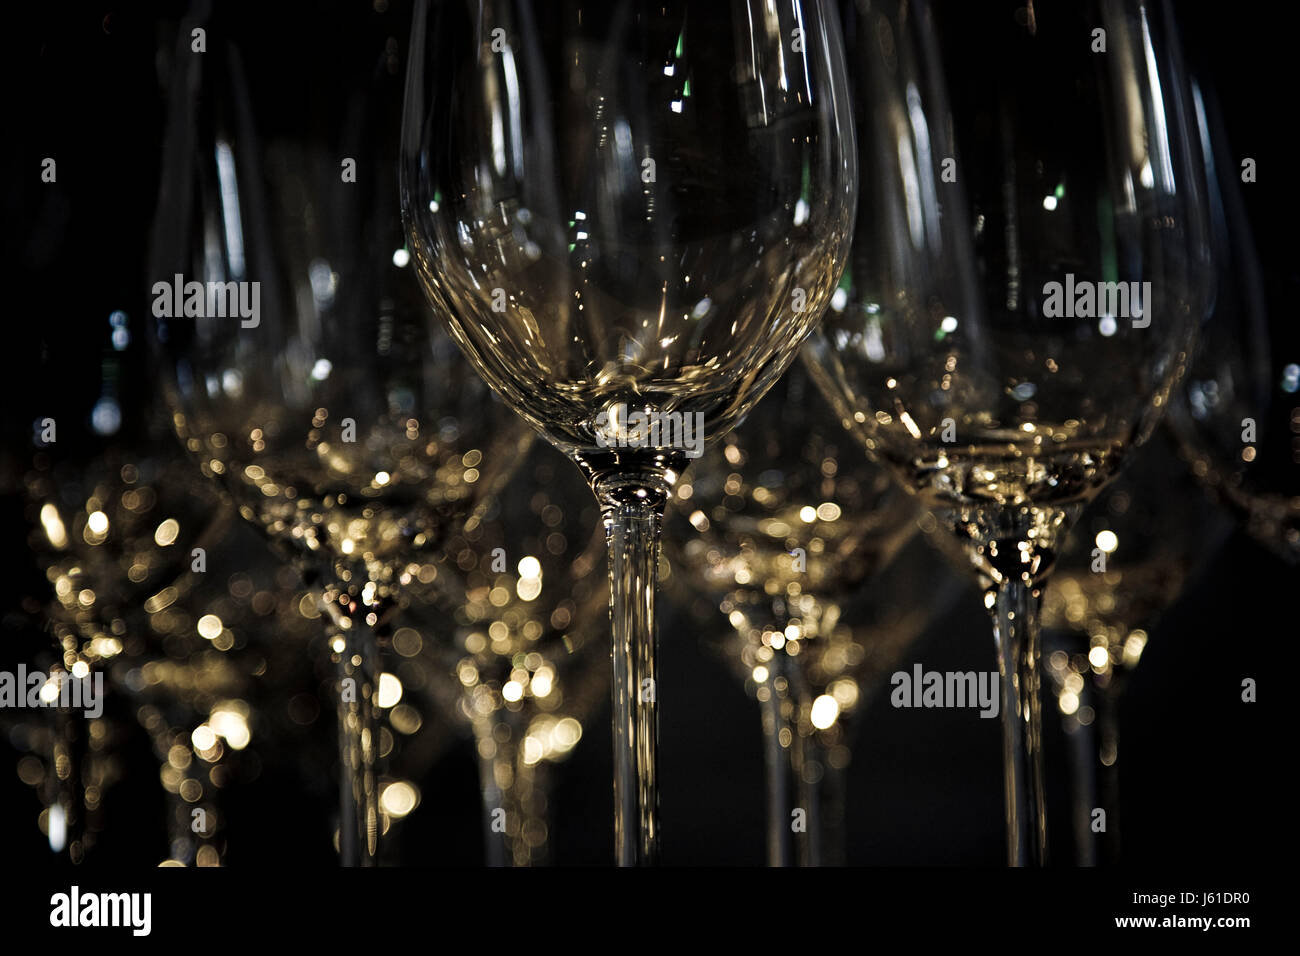 wineglass 02 Stock Photo